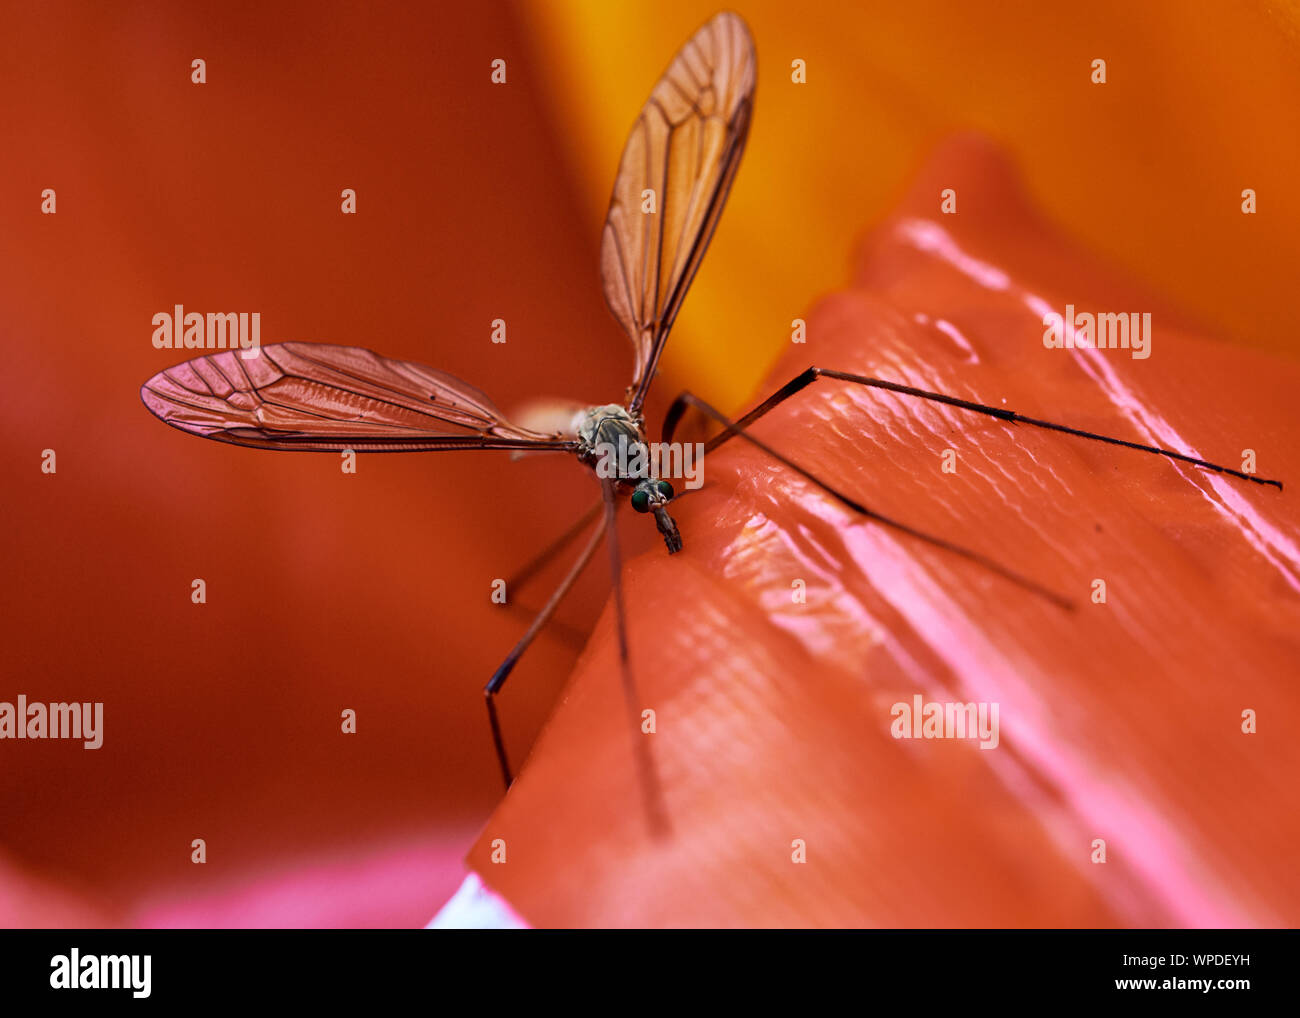 Spindly Kran fliegen (Tipulidae) Insekt thront auf einem hellen Rot outdoor Spielzeug aufblasbar. Stockfoto